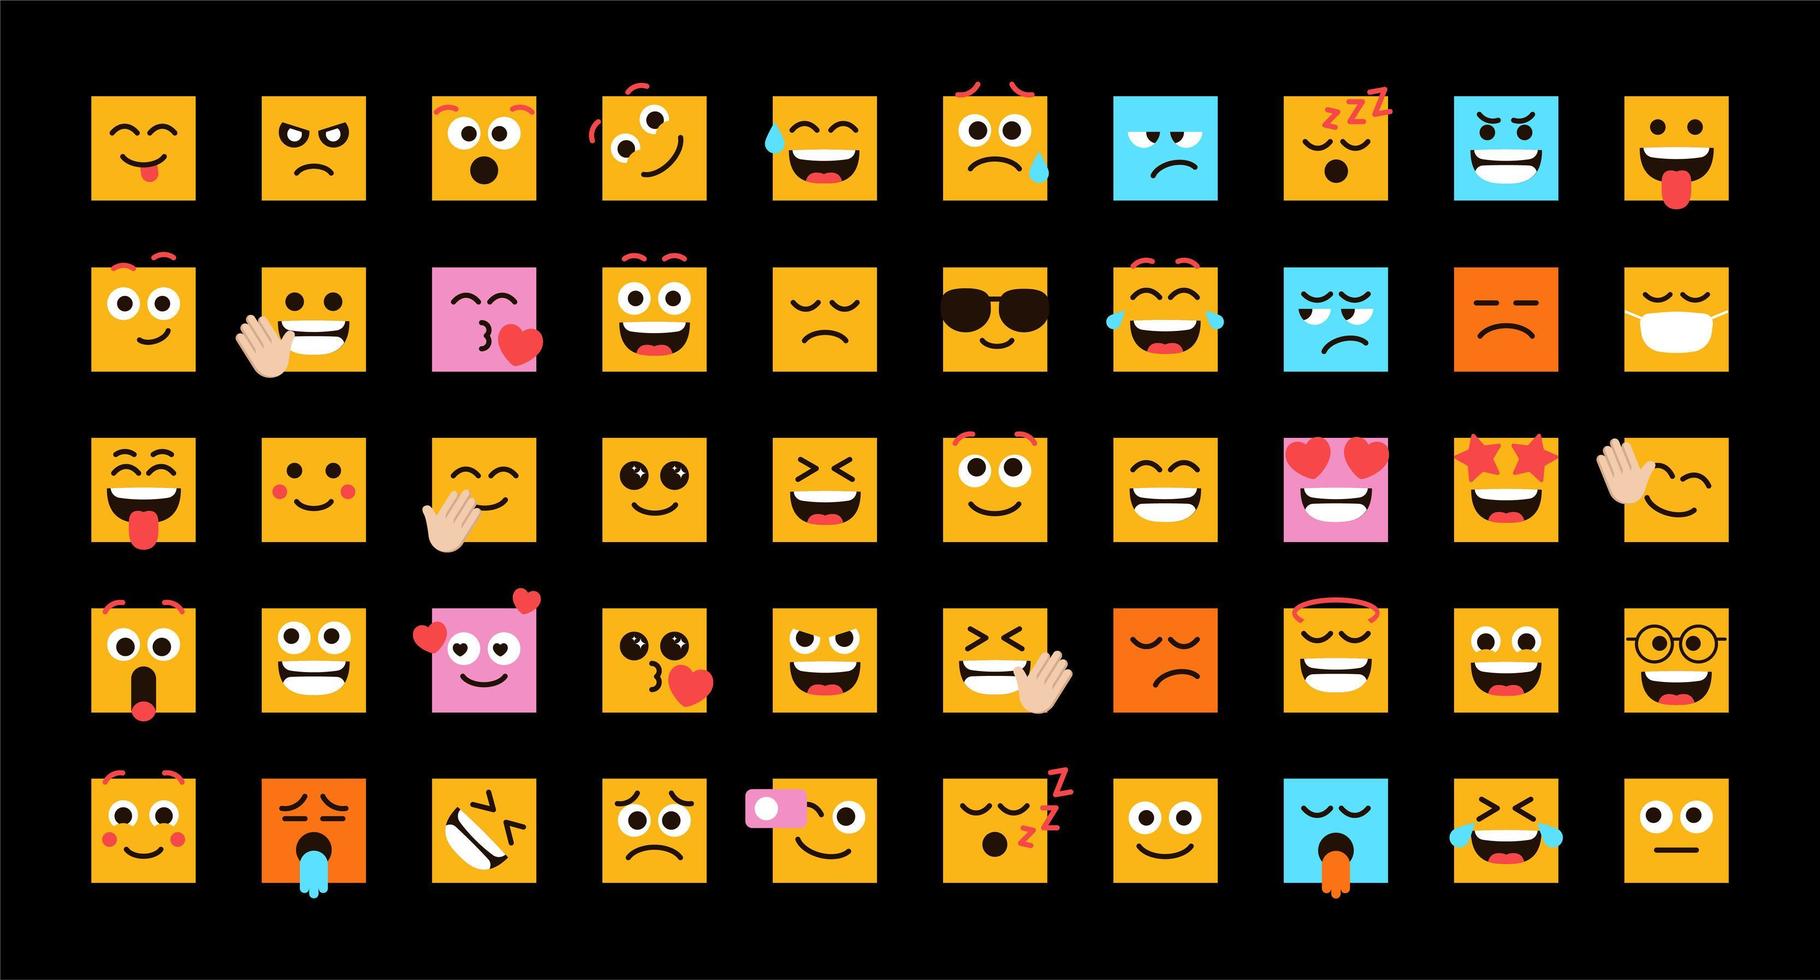 émoticônes mignonnes sous forme de visages carrés ensemble de vecteurs pour la publication et la réaction sur les réseaux sociaux. emoji drôle avec des expressions faciales. illustration vectorielle vecteur